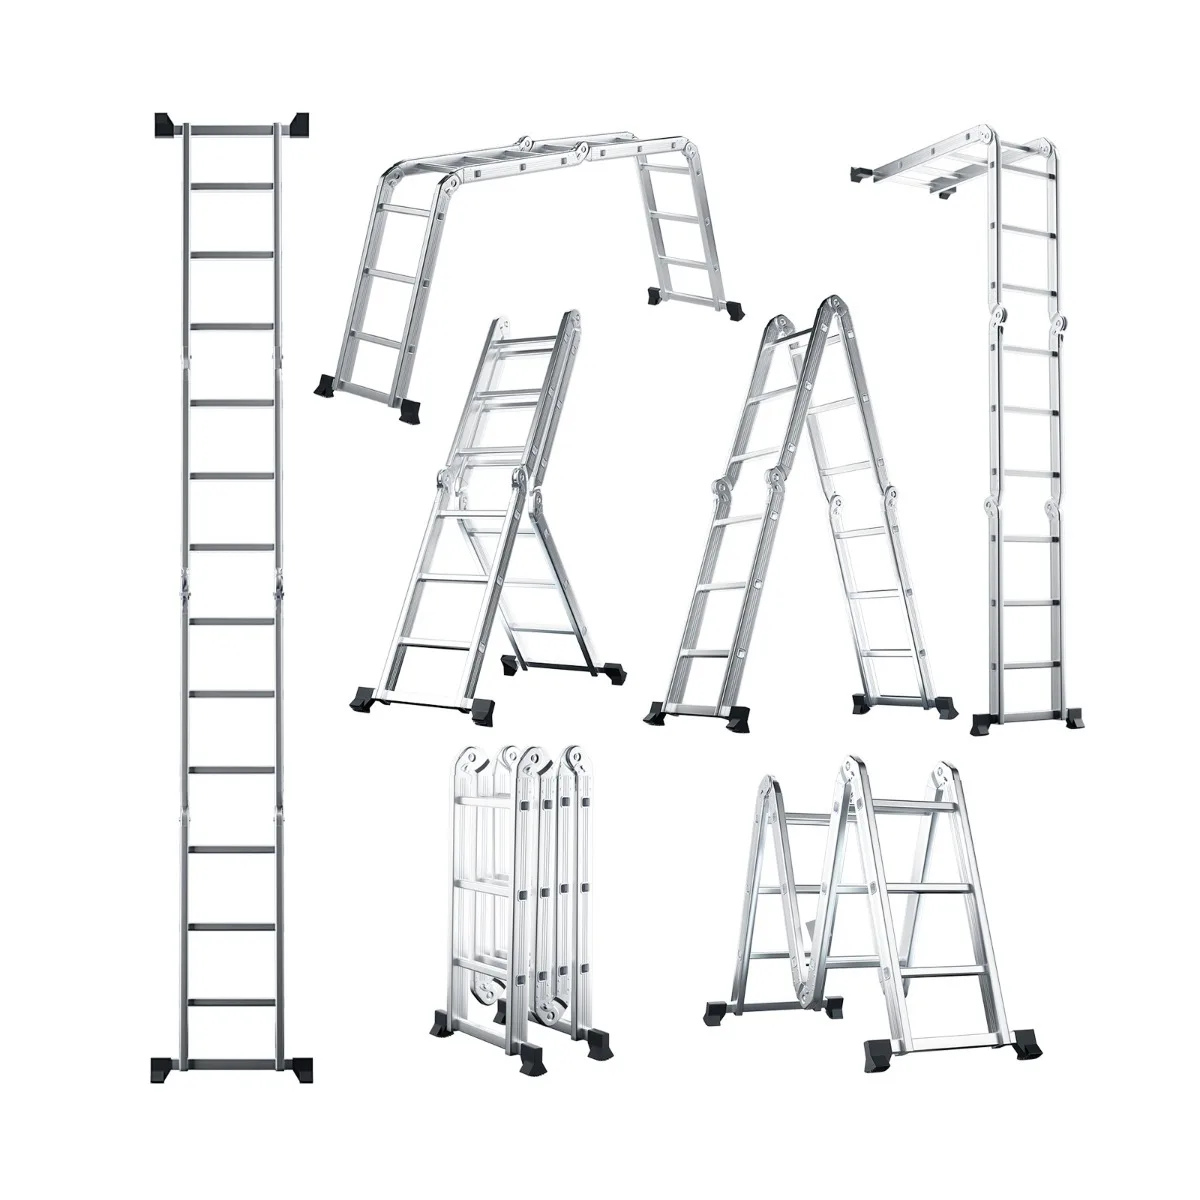 Skladacie rebríkové lešenie 7v1 | 150 kg má 7 rôznych konfigurácií